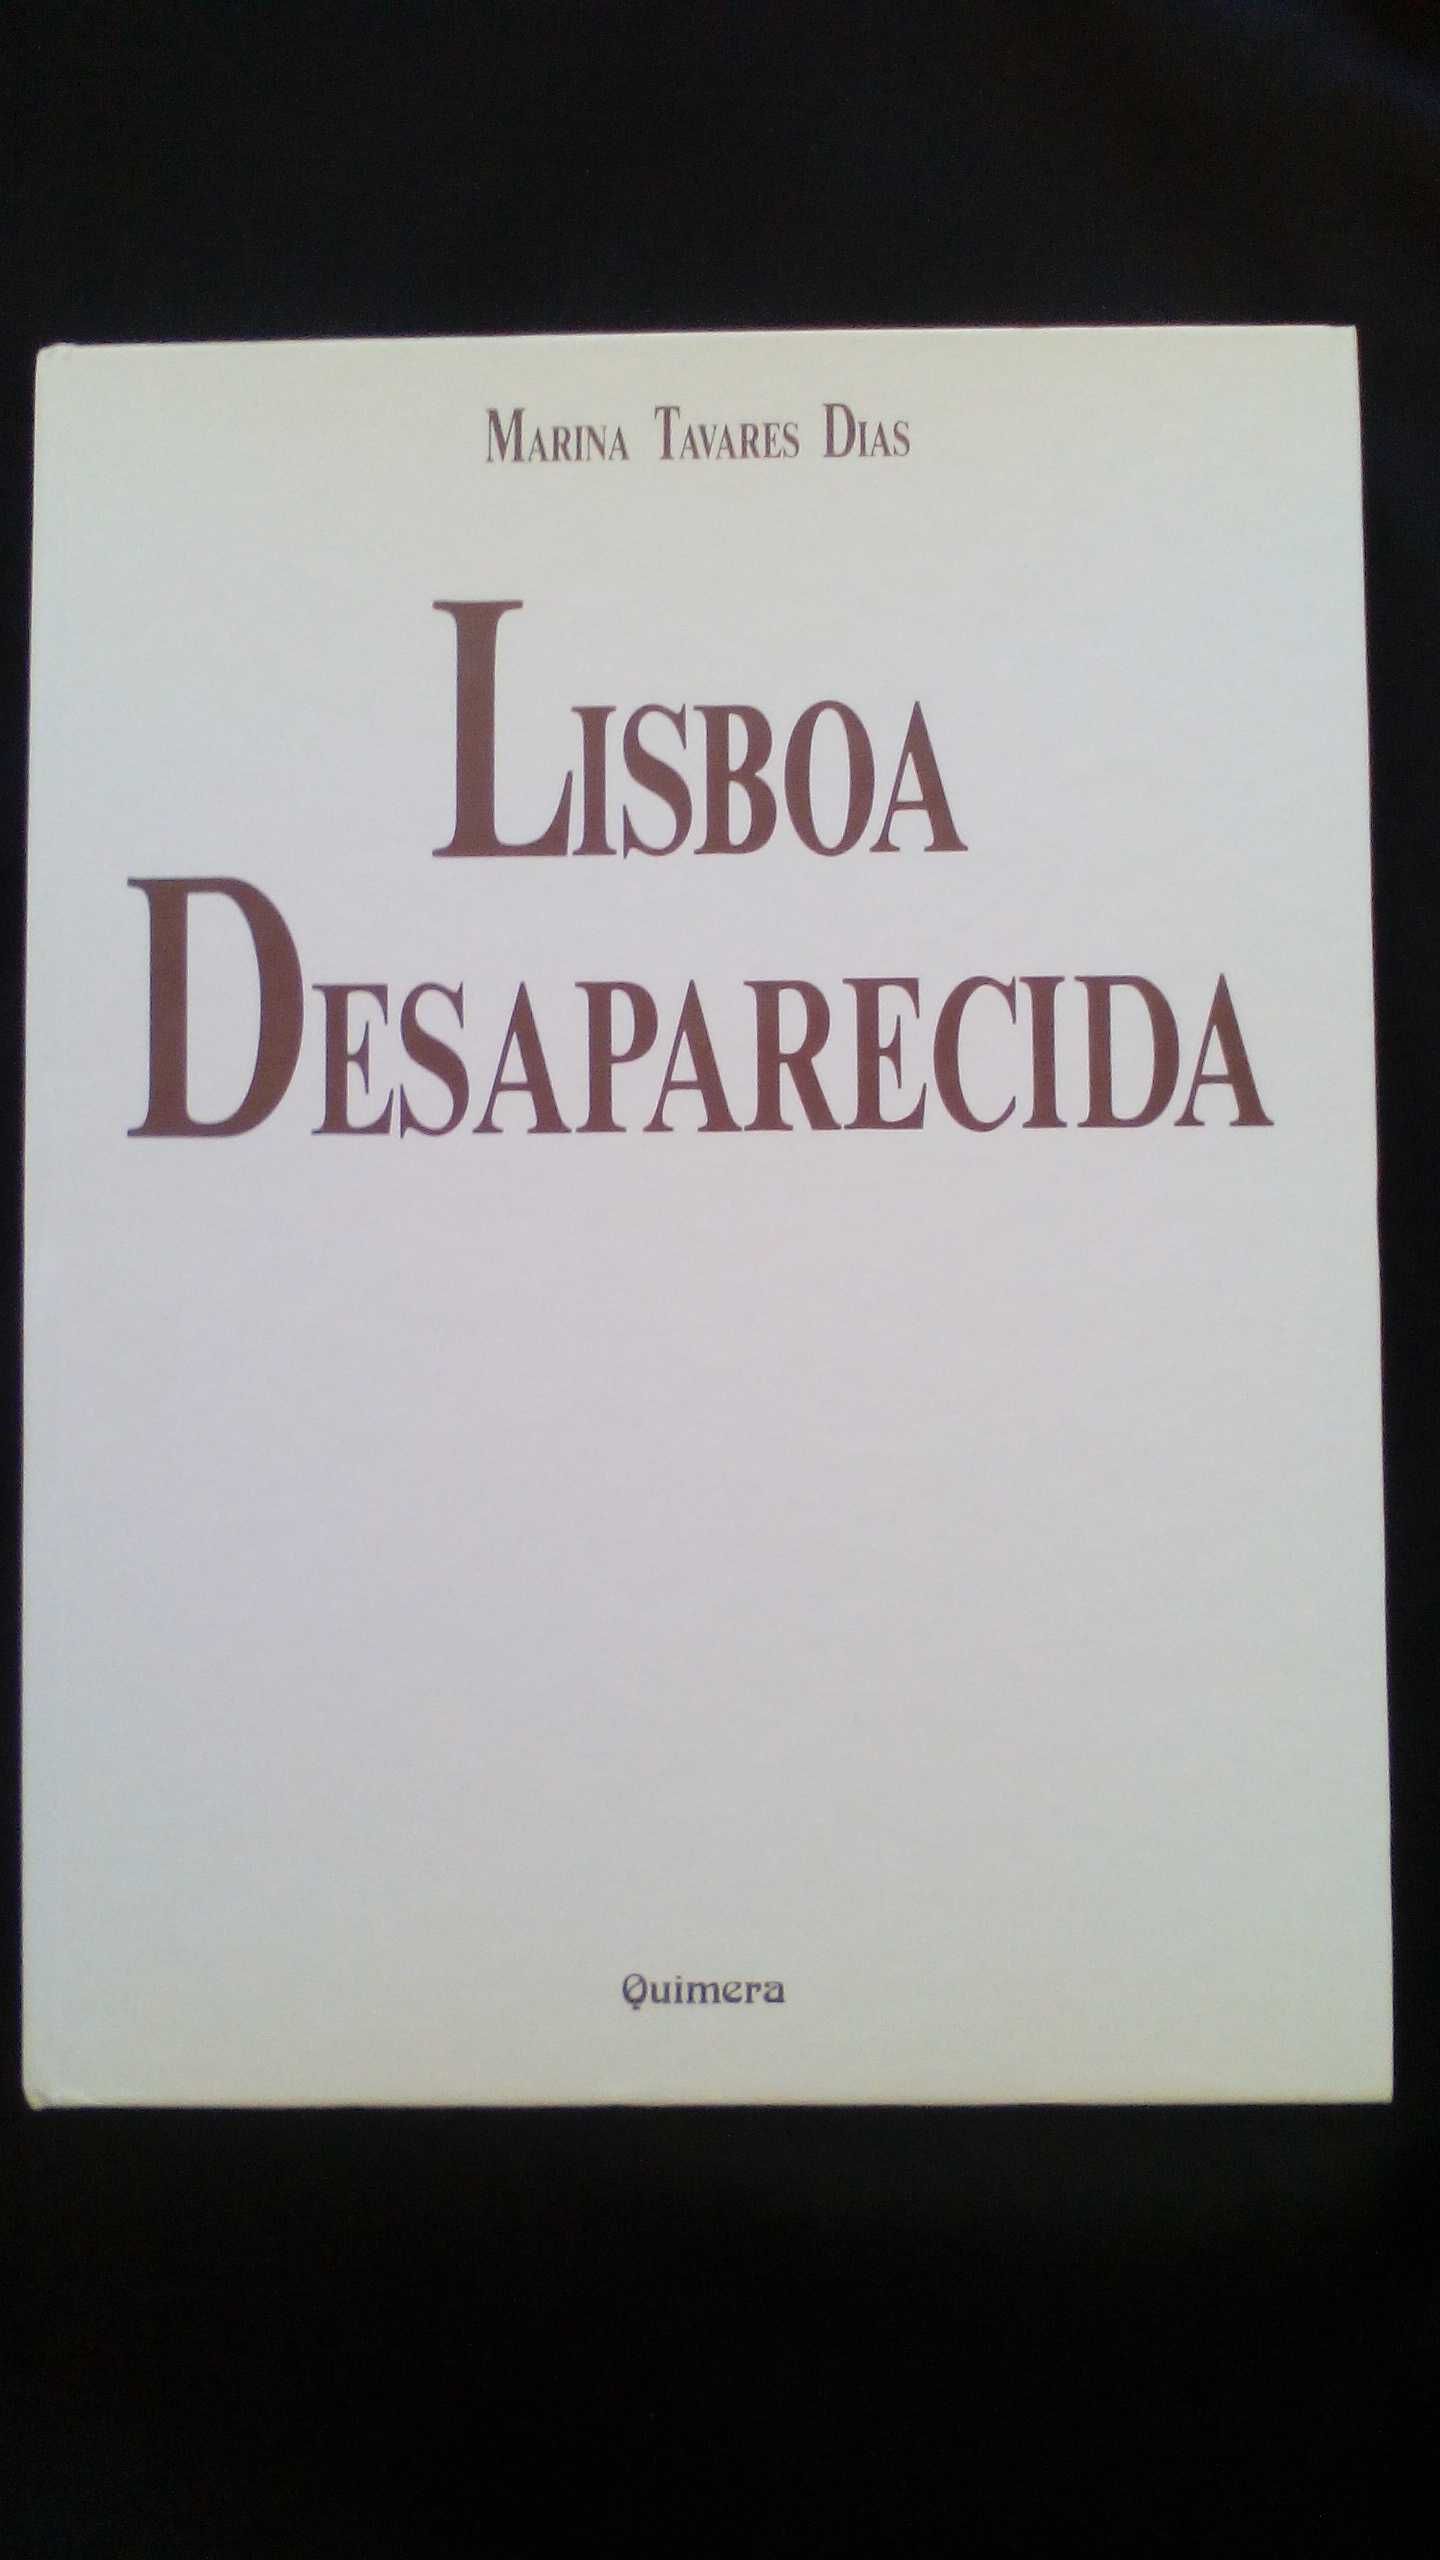 Lisboa Desaparecida, de Marina Tavares Dias